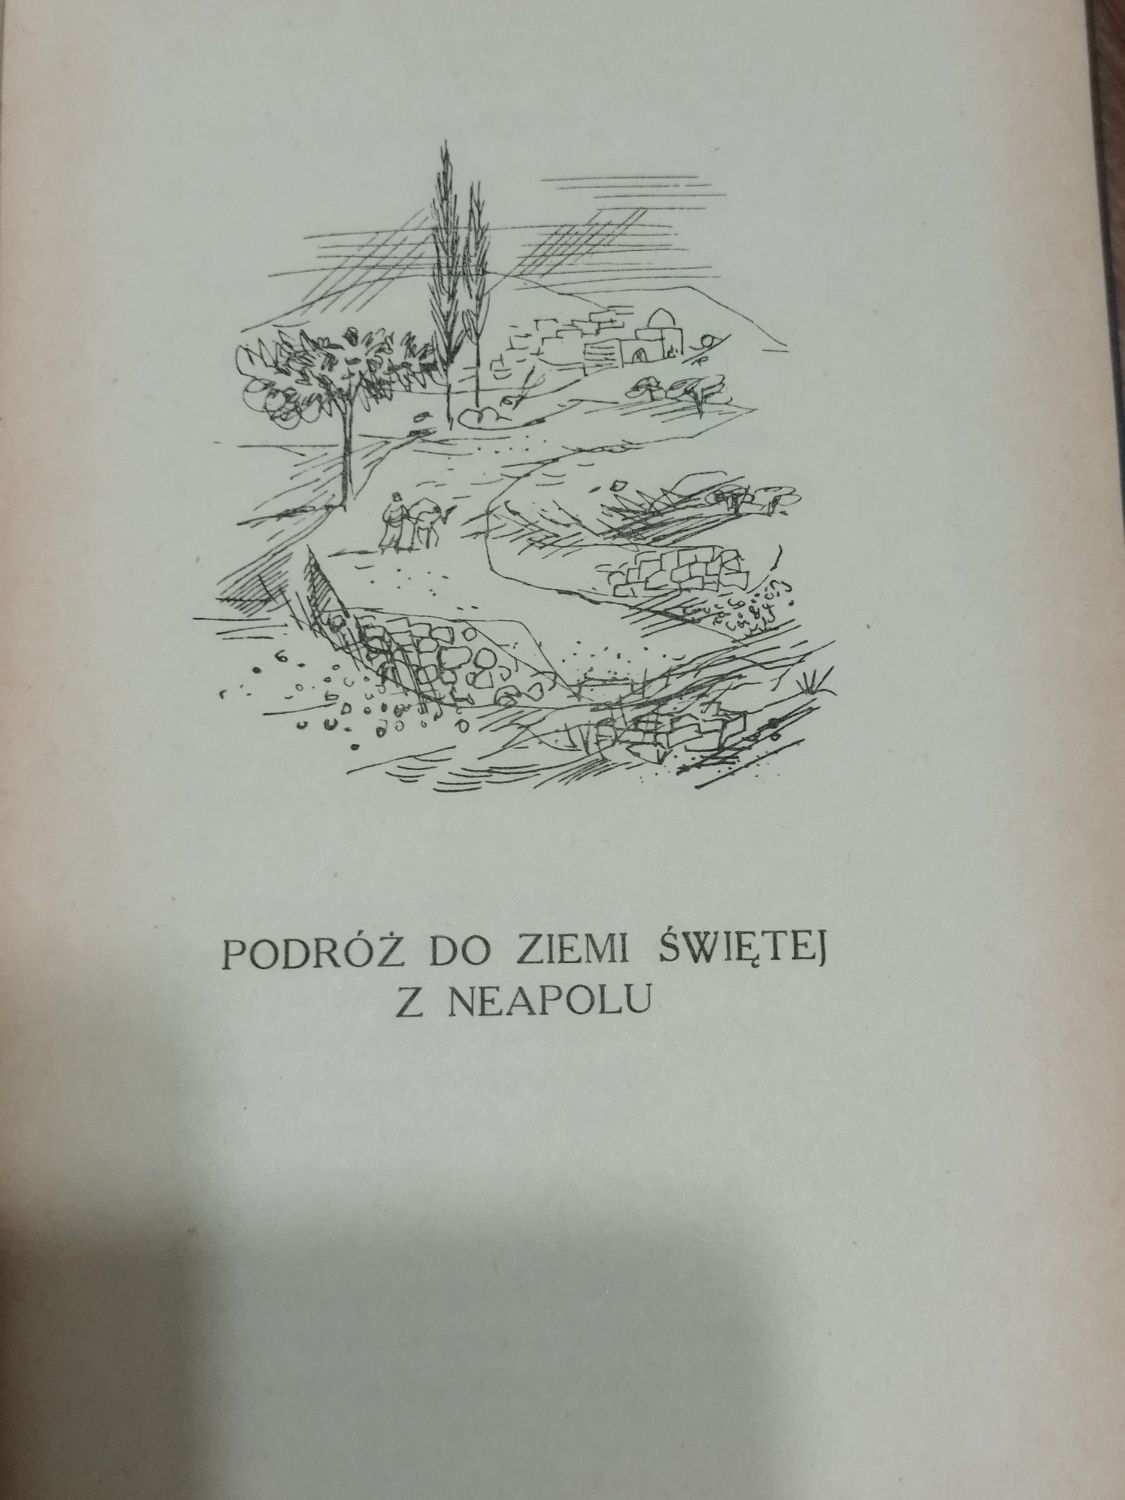 Dzieła wybrane Juliusza Słowackiego  z 1954 roku